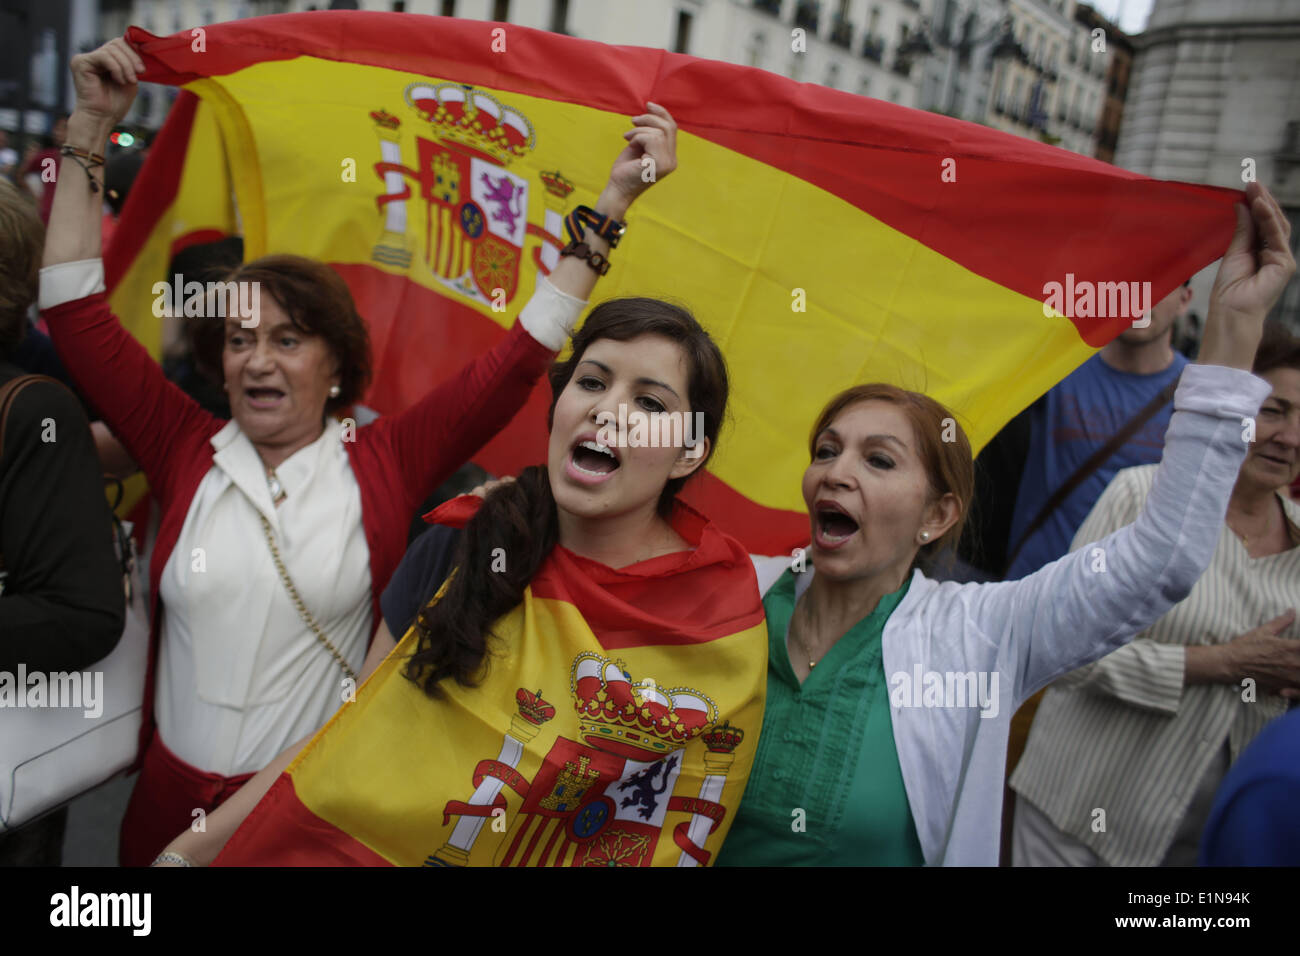 Madrid, Spagna. Il 6 giugno, 2014. I manifestanti gridare slogan, ridere e wave bandiere spagnole durante una manifestazione di protesta a favore della monarchia in Spagna a Madrid. Più di un centinaio di manifestanti si sono riuniti presso la Puerta del Sol in difesa della Monarchia spagnola e la costituzione spagnola dal 1978. Questa dimostrazione è il 'contrappunto' per le proteste di massa che ha raccolto migliaia di repubblicani in tutta la Spagna, appositamente a Madrid e Barcellona, lunedì a indire un referendum sulla monarchia spagnola. Credito: Rodrigo Garcia/NurPhoto/ZUMAPRESS.com/Alamy Live News Foto Stock